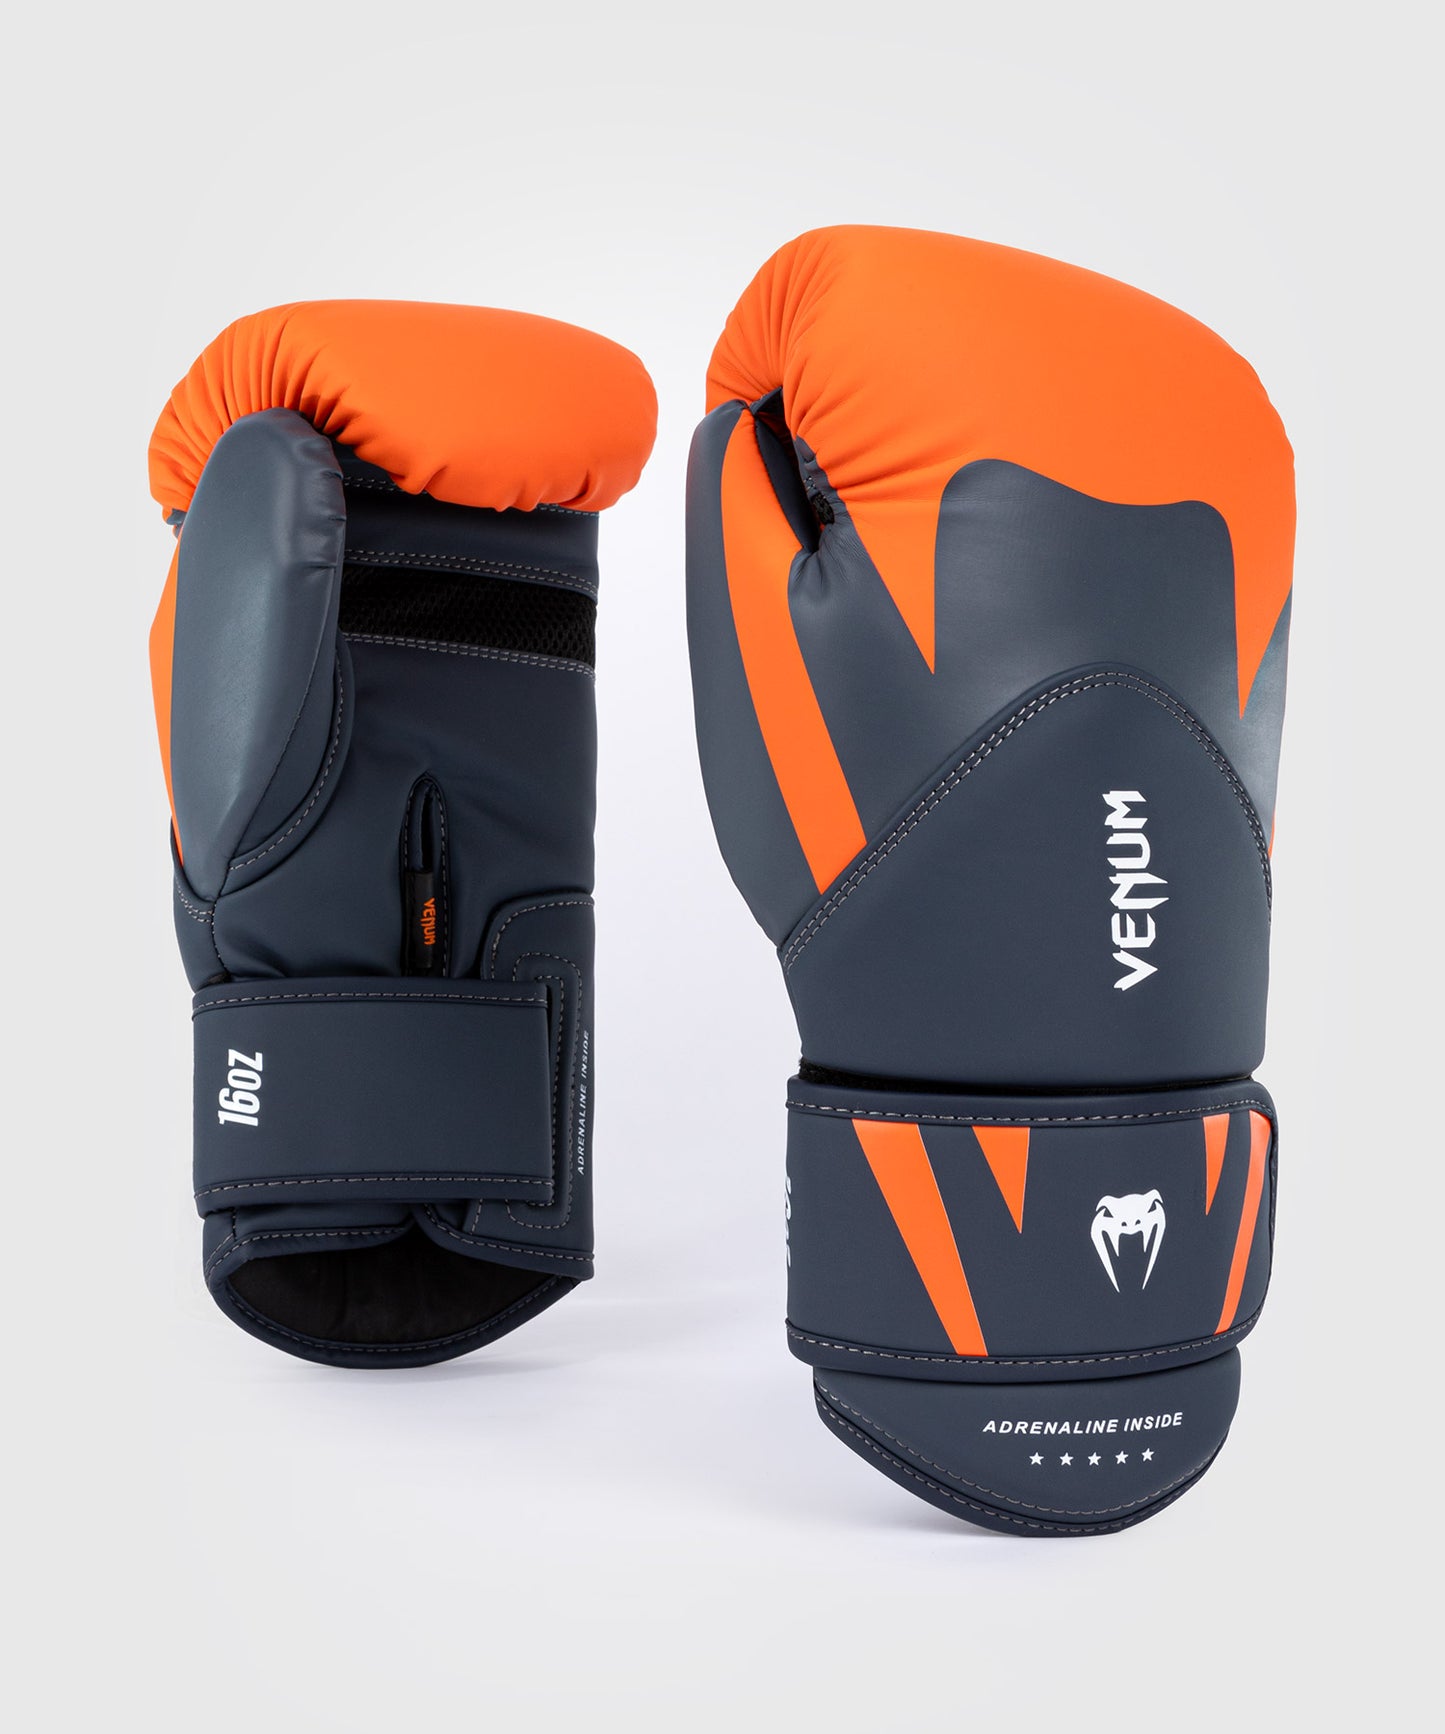 Боксерские перчатки Venum Challenger 4.0 - оранжевый/темно-синий